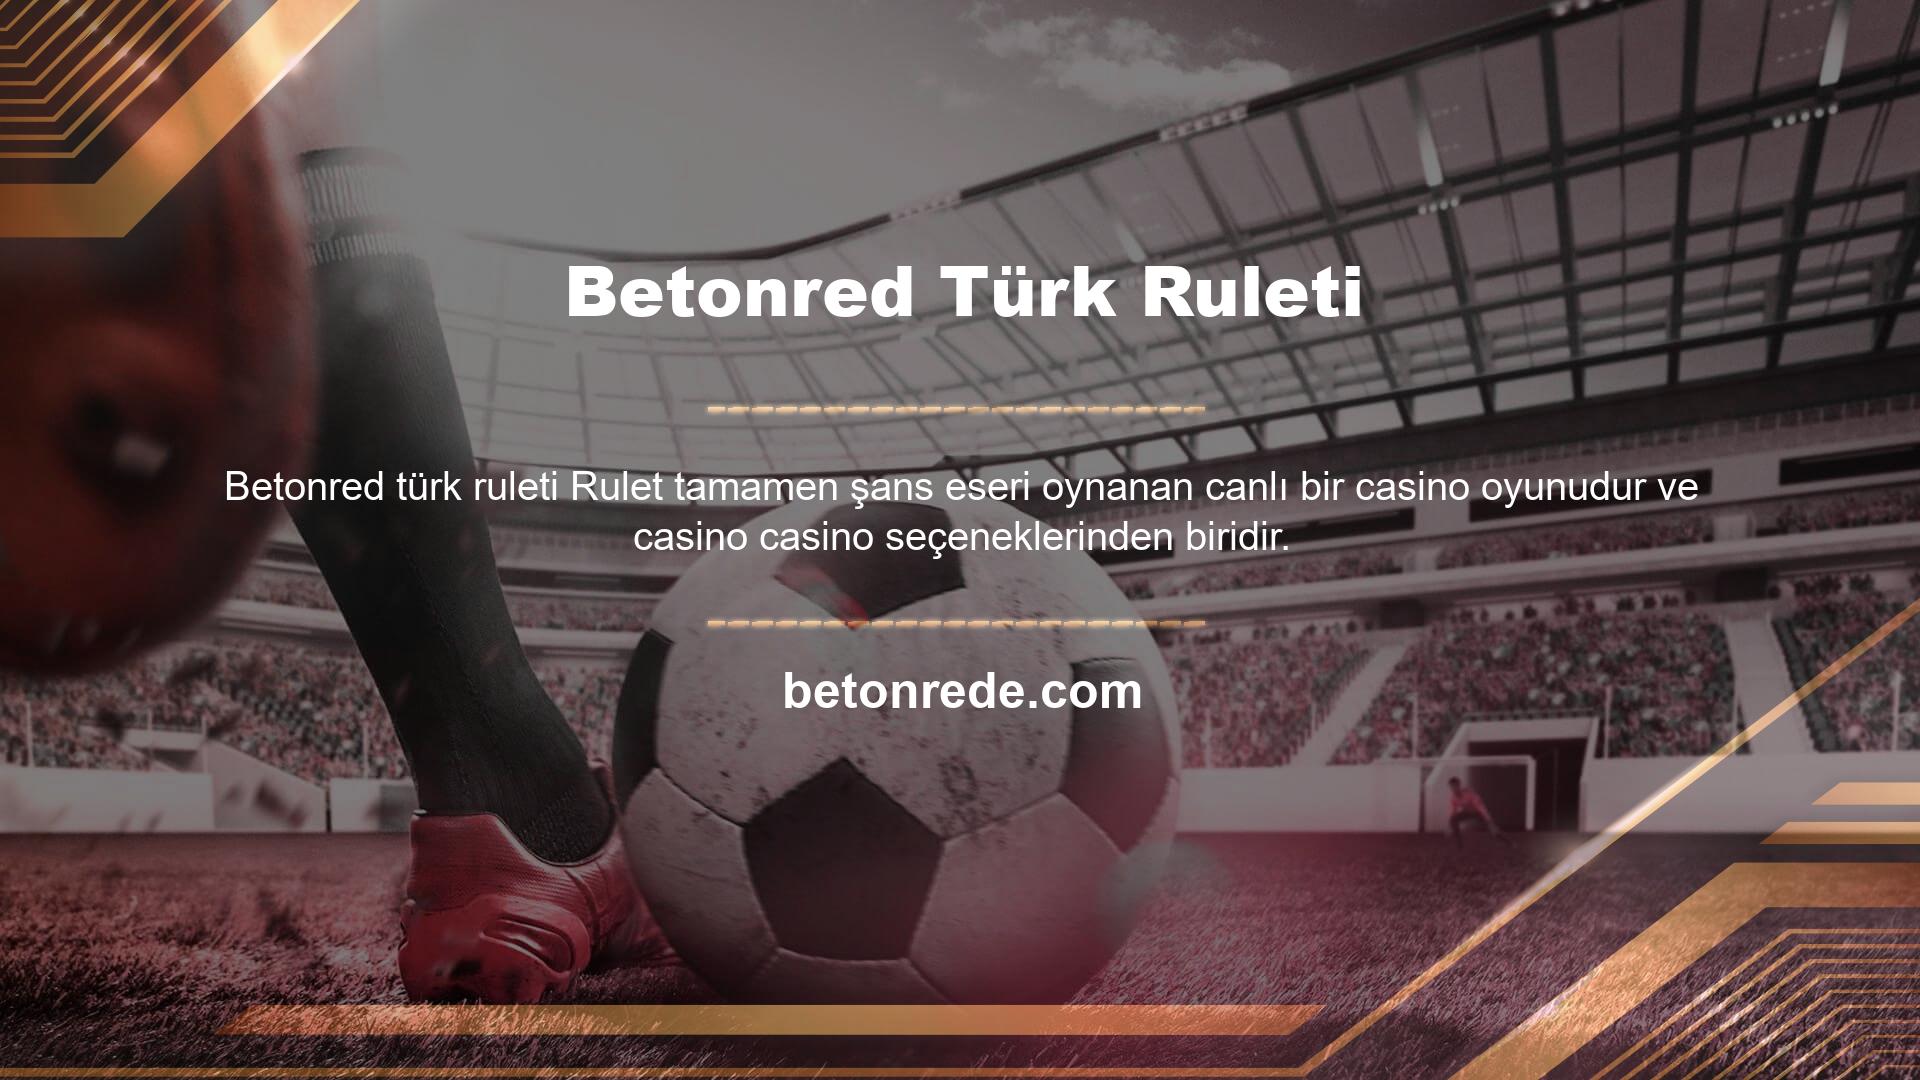 Betonred tarafından üyelerine sunulan Türk Ruleti oyunu, casino oyunları arasında en popüler canlı casino oyunu olarak bilinmektedir